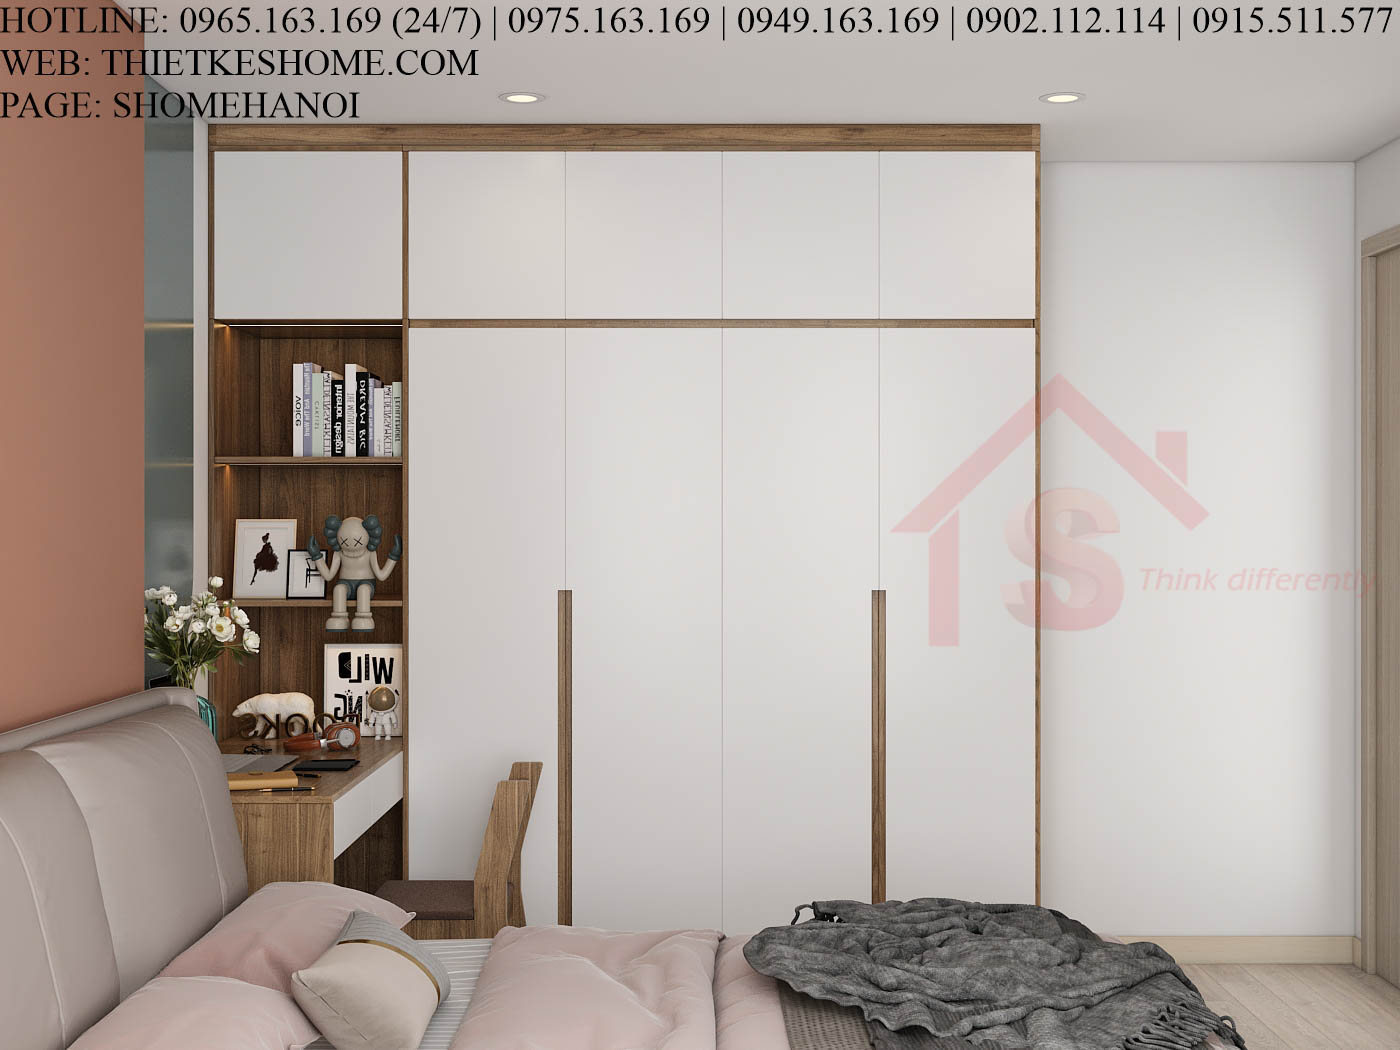 S HOME Combo mẫu nội thất phòng ngủ đẹp hiện đại tiện dụng SHOME6825